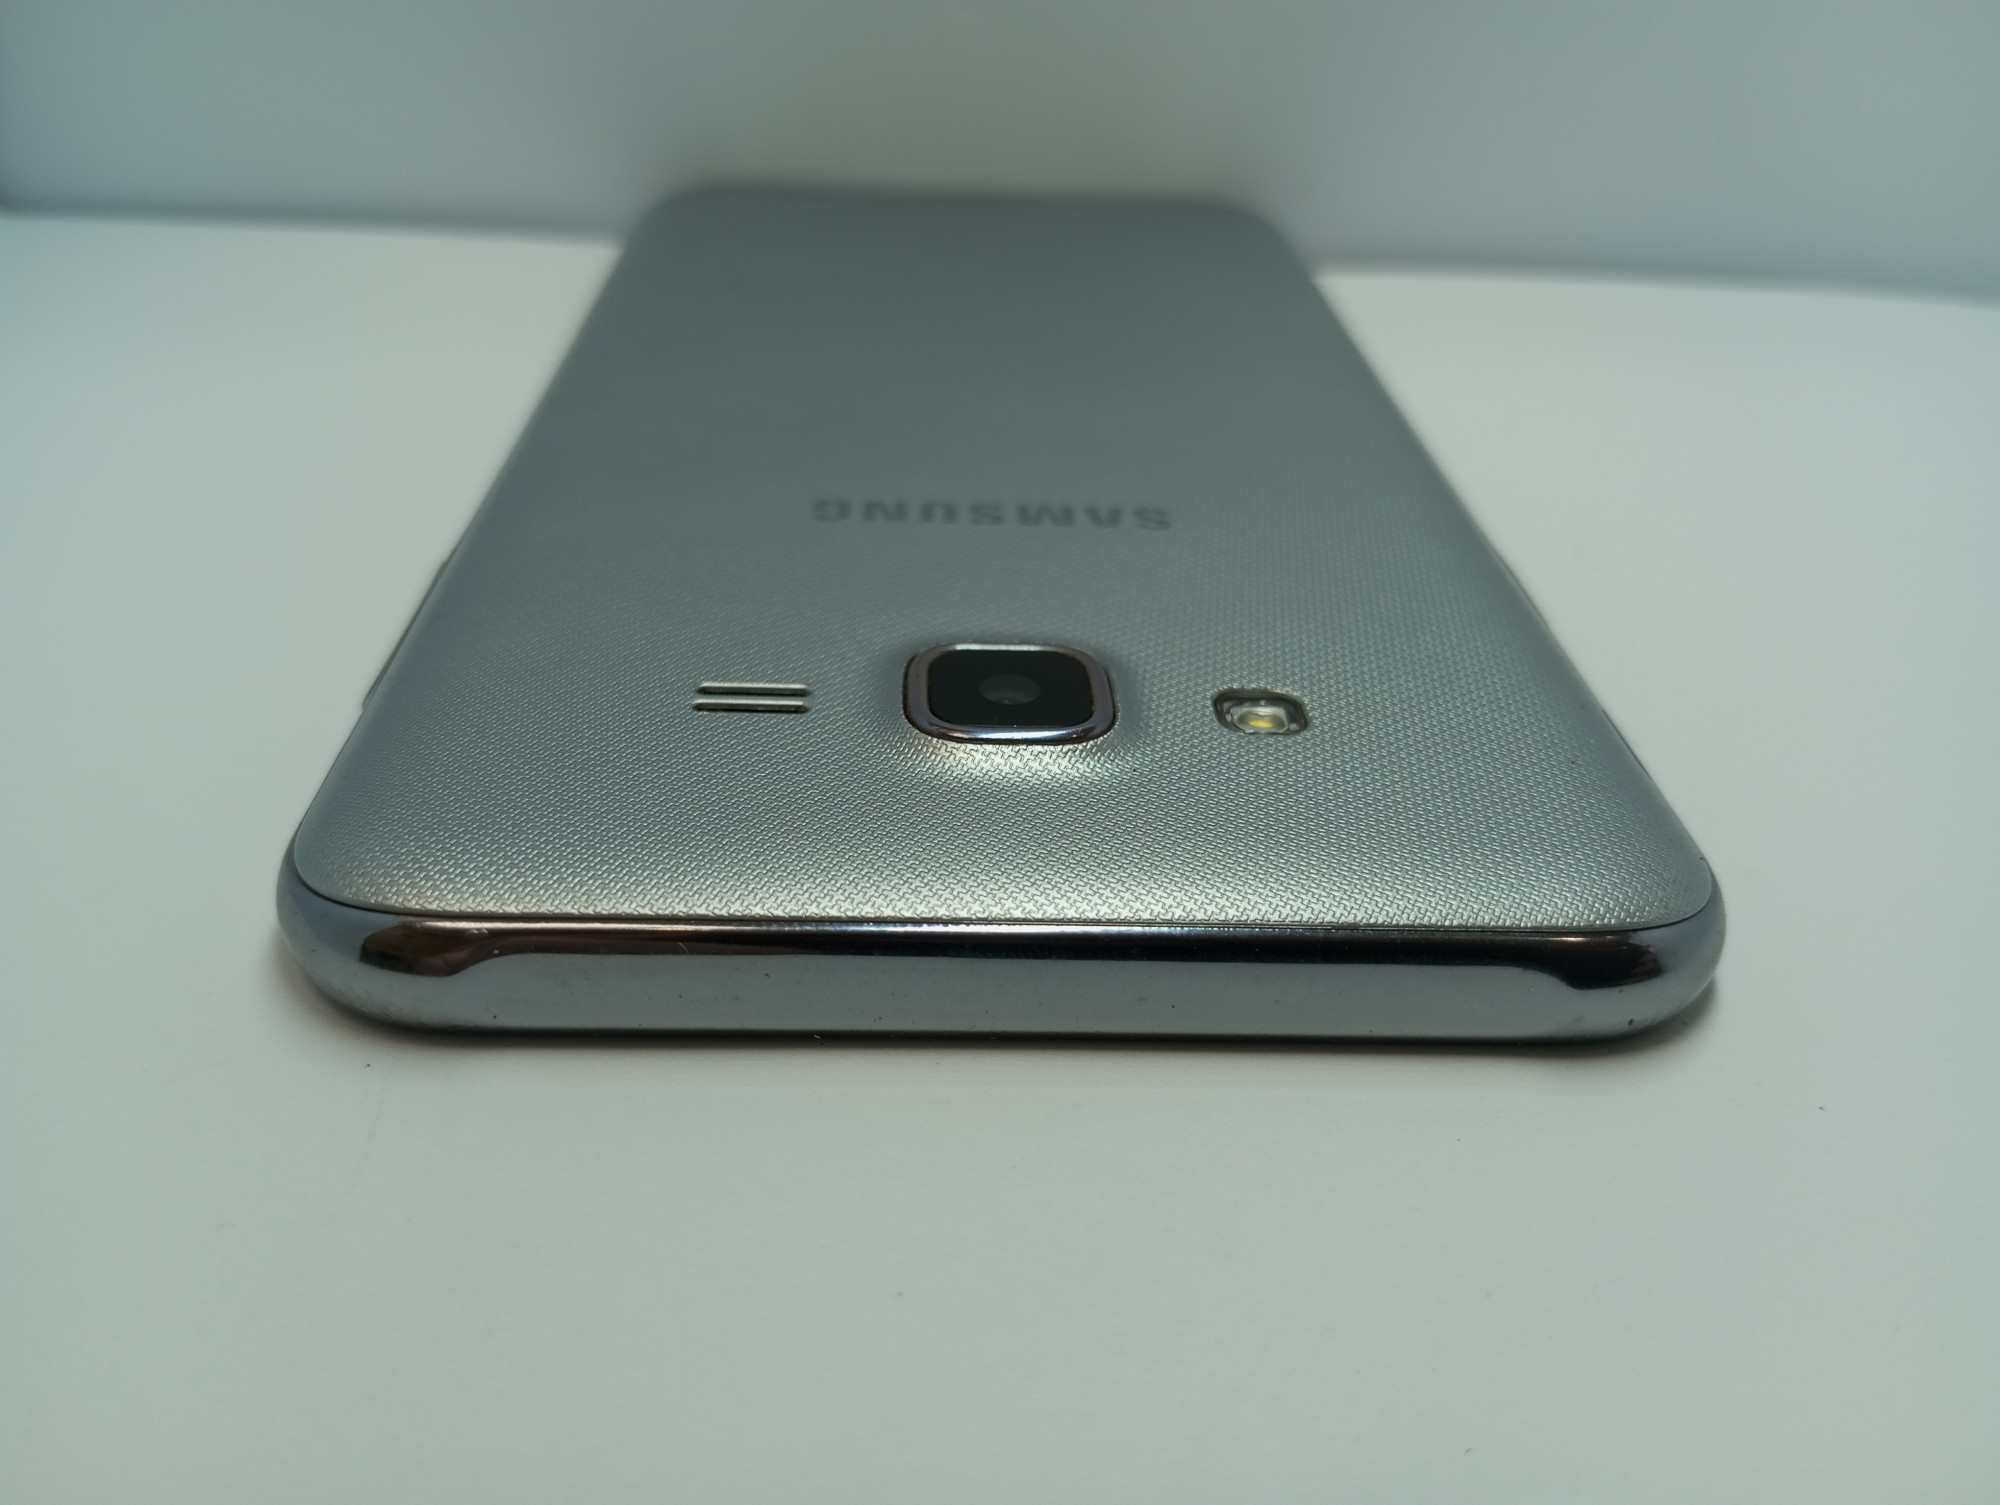 Samsung Galaxy J7 Neo (SM-J701F) 2/16Gb 4